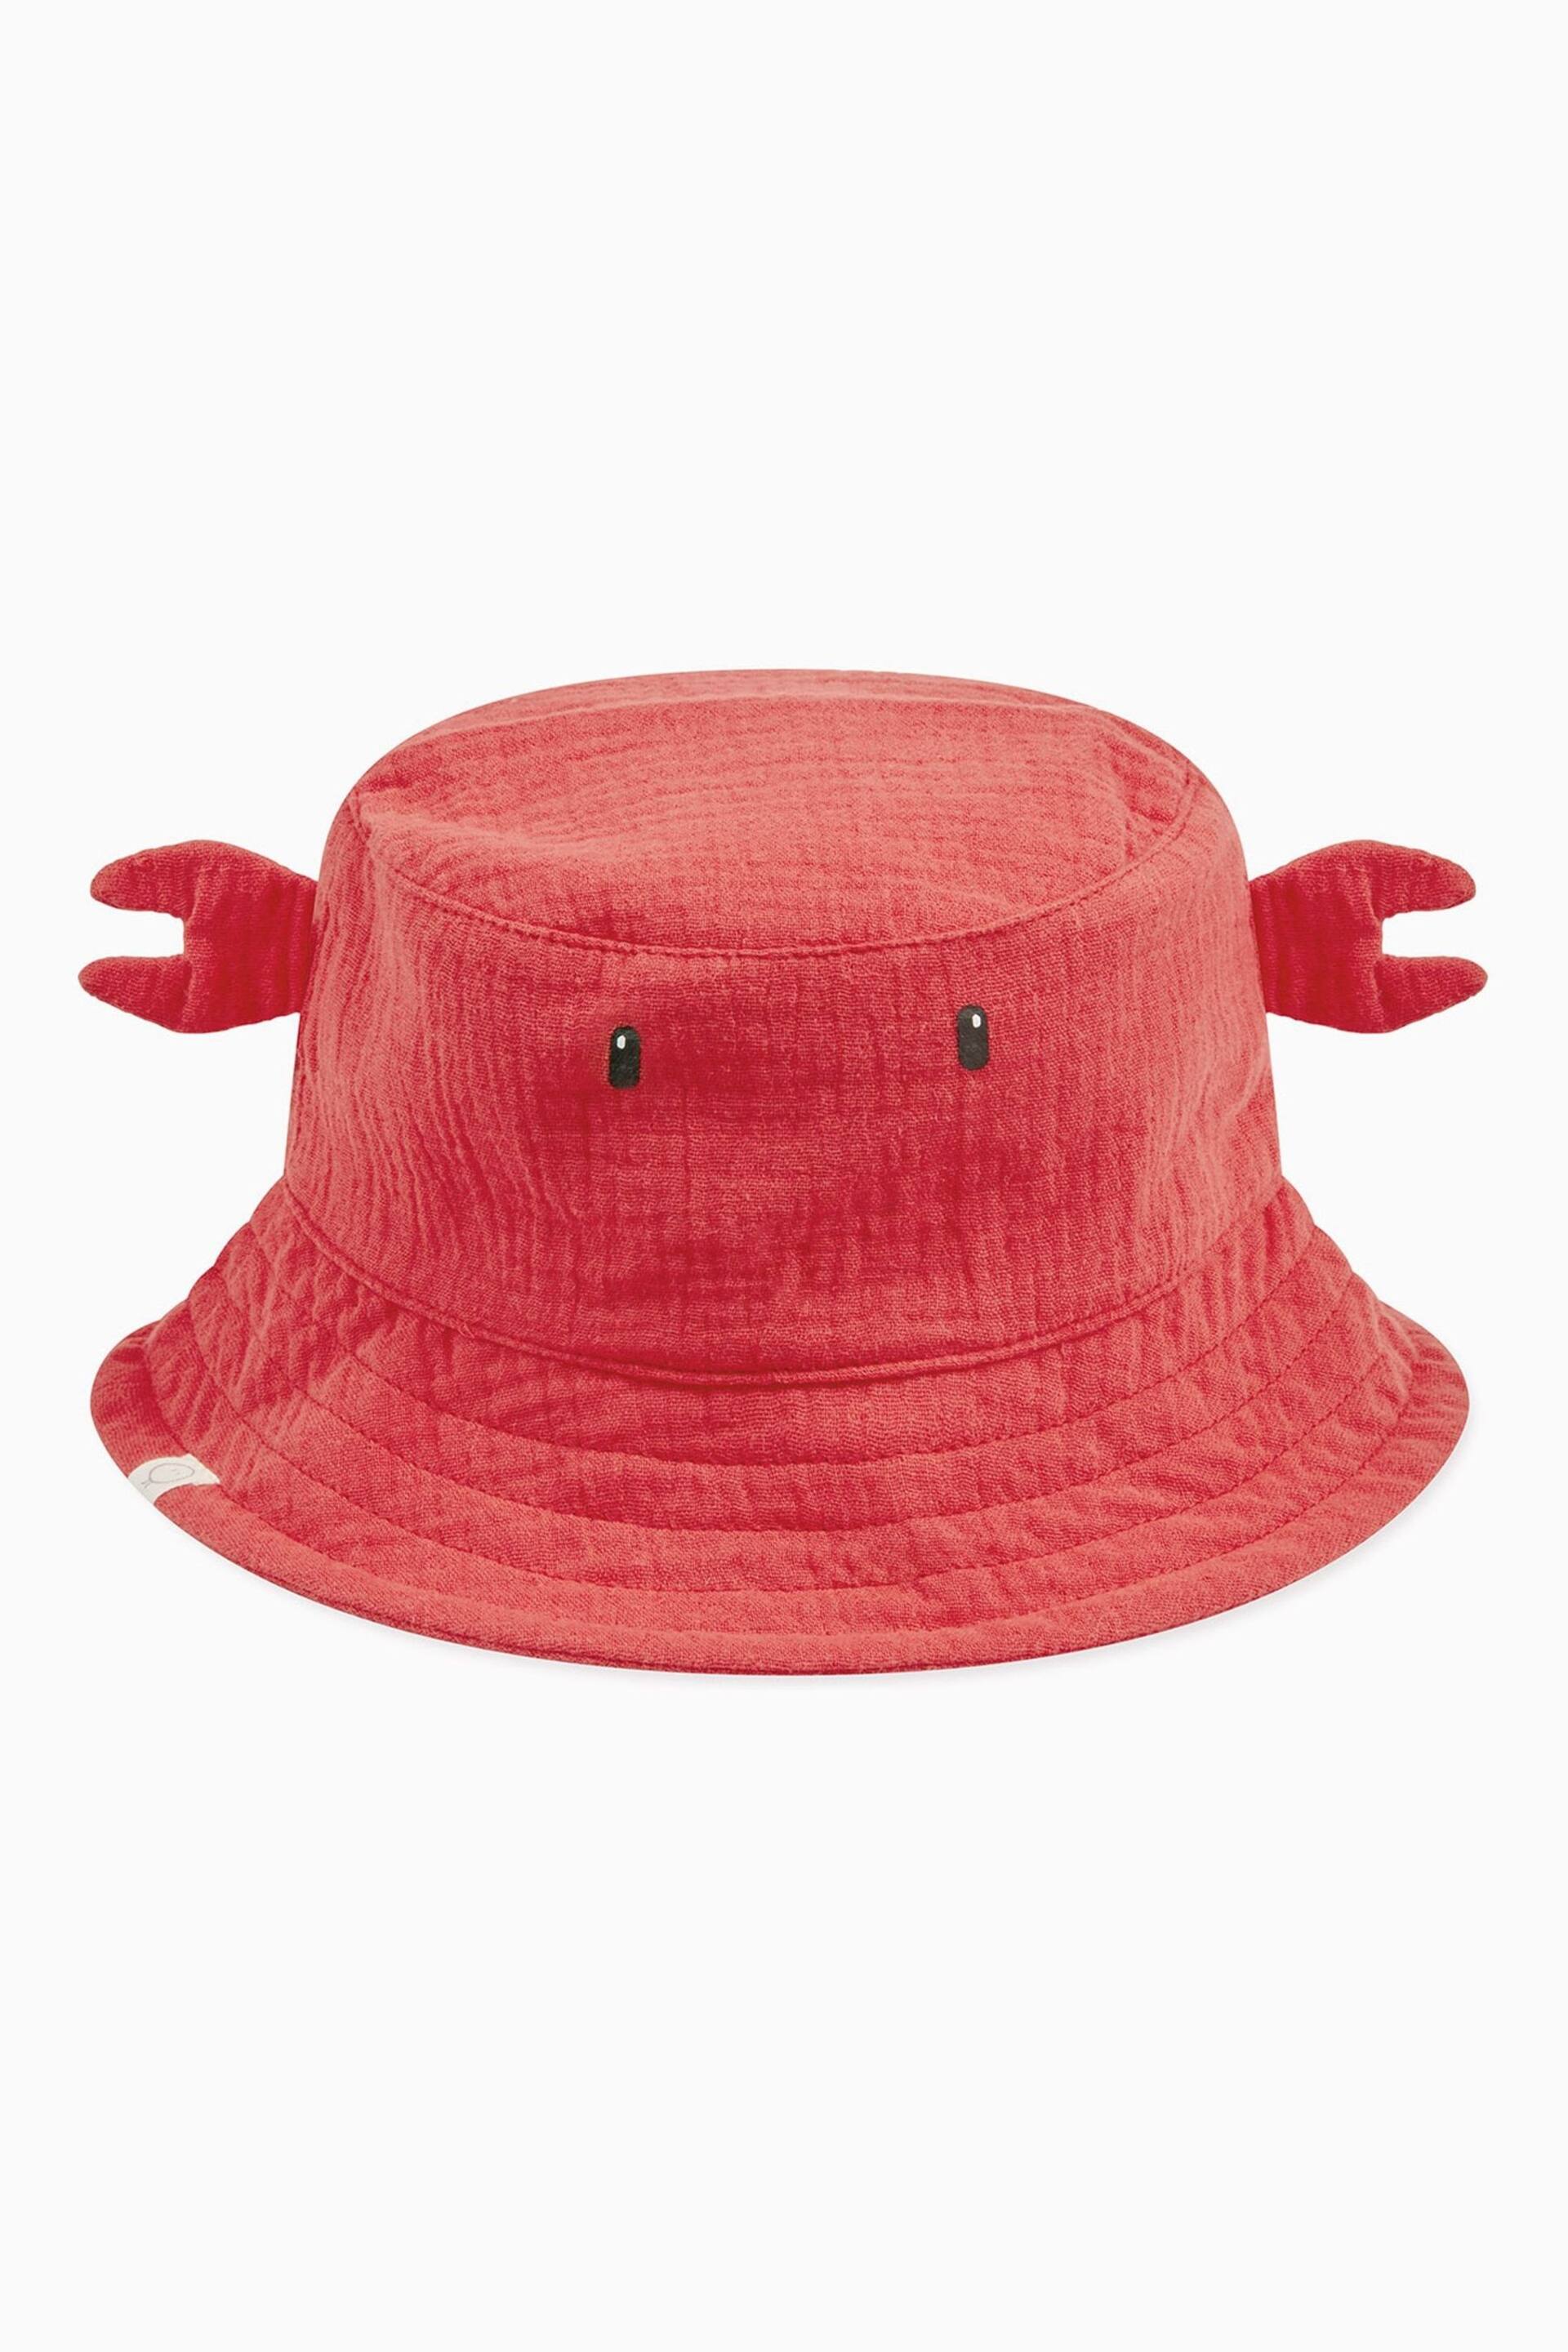 MORI Orange Organic Cotton Orange Crab Bucket Hat - Image 1 of 1